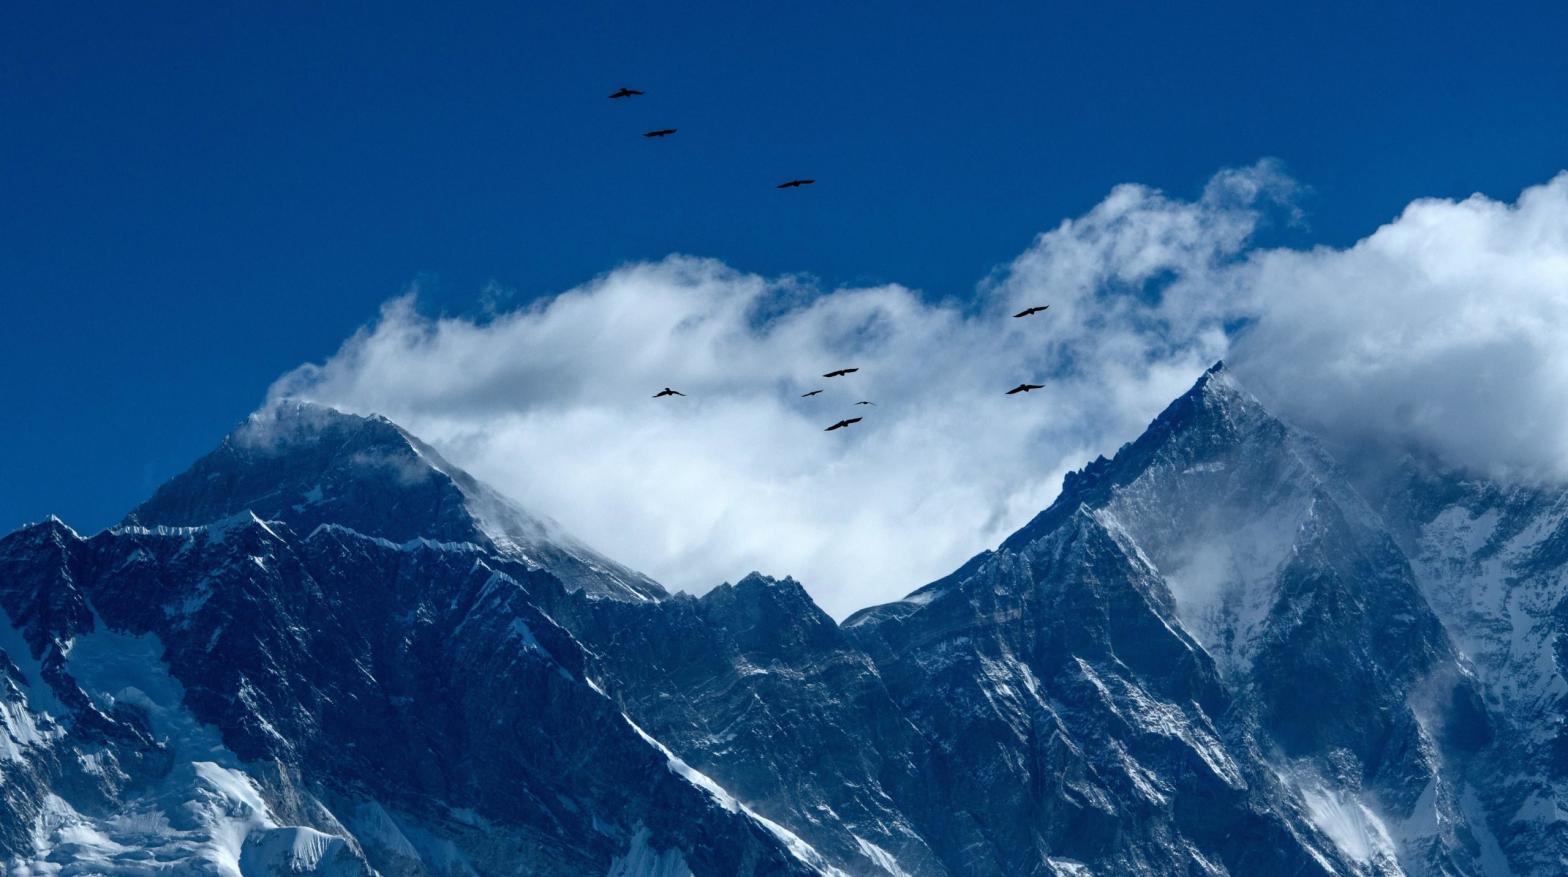 Birds fly over Mount Everest. (Image: PRAKASH MATHEMA, Getty Images)